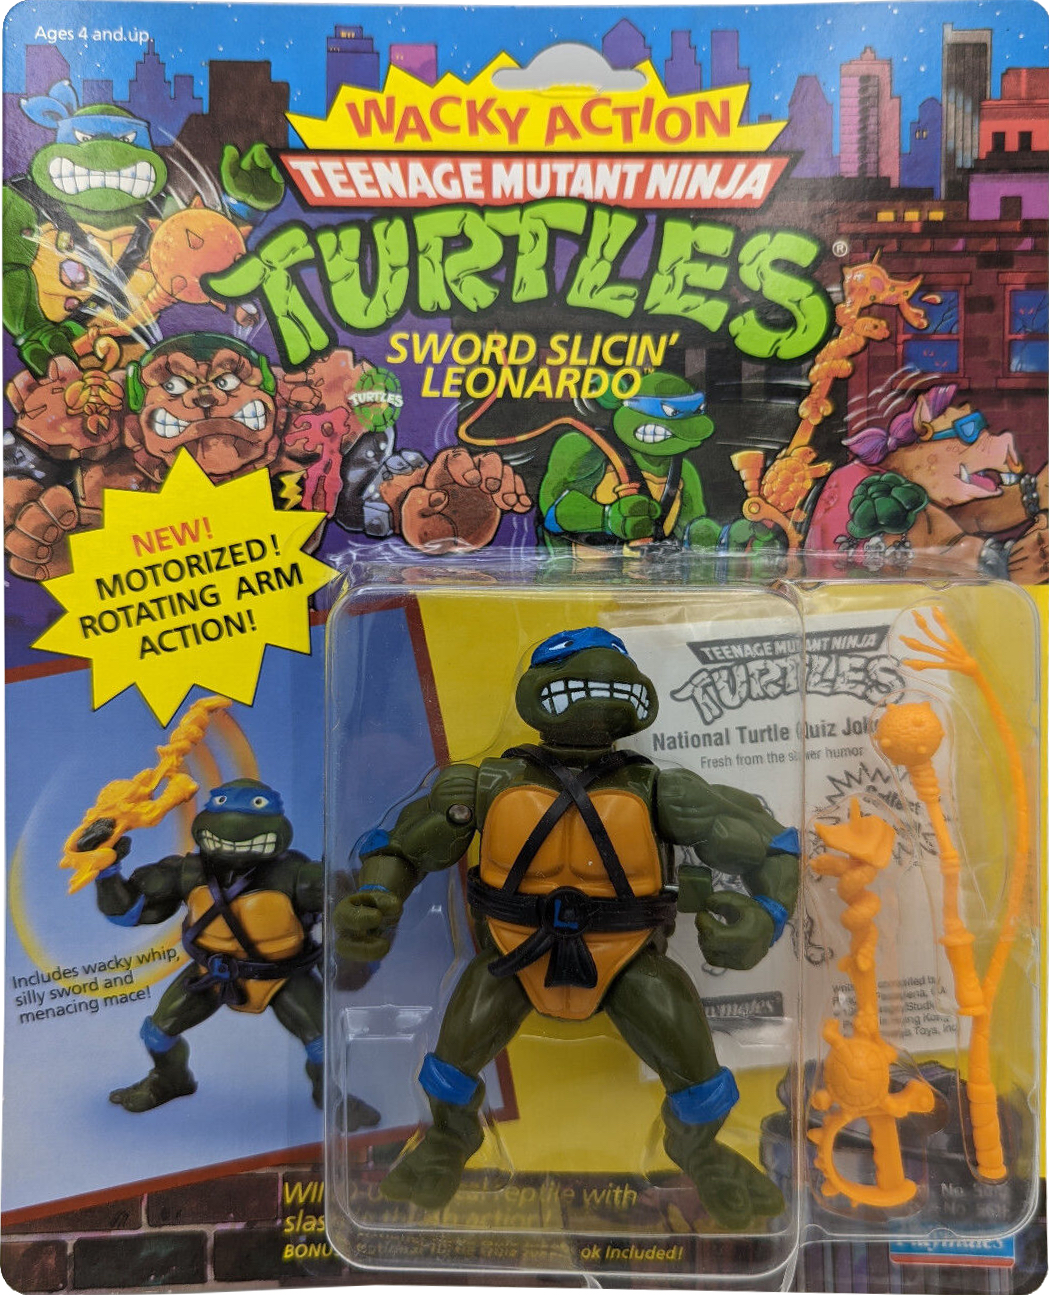 Scootin' Leo Teenage Mutant Ninja Turtles TMNT 2003 Playmates MOSC